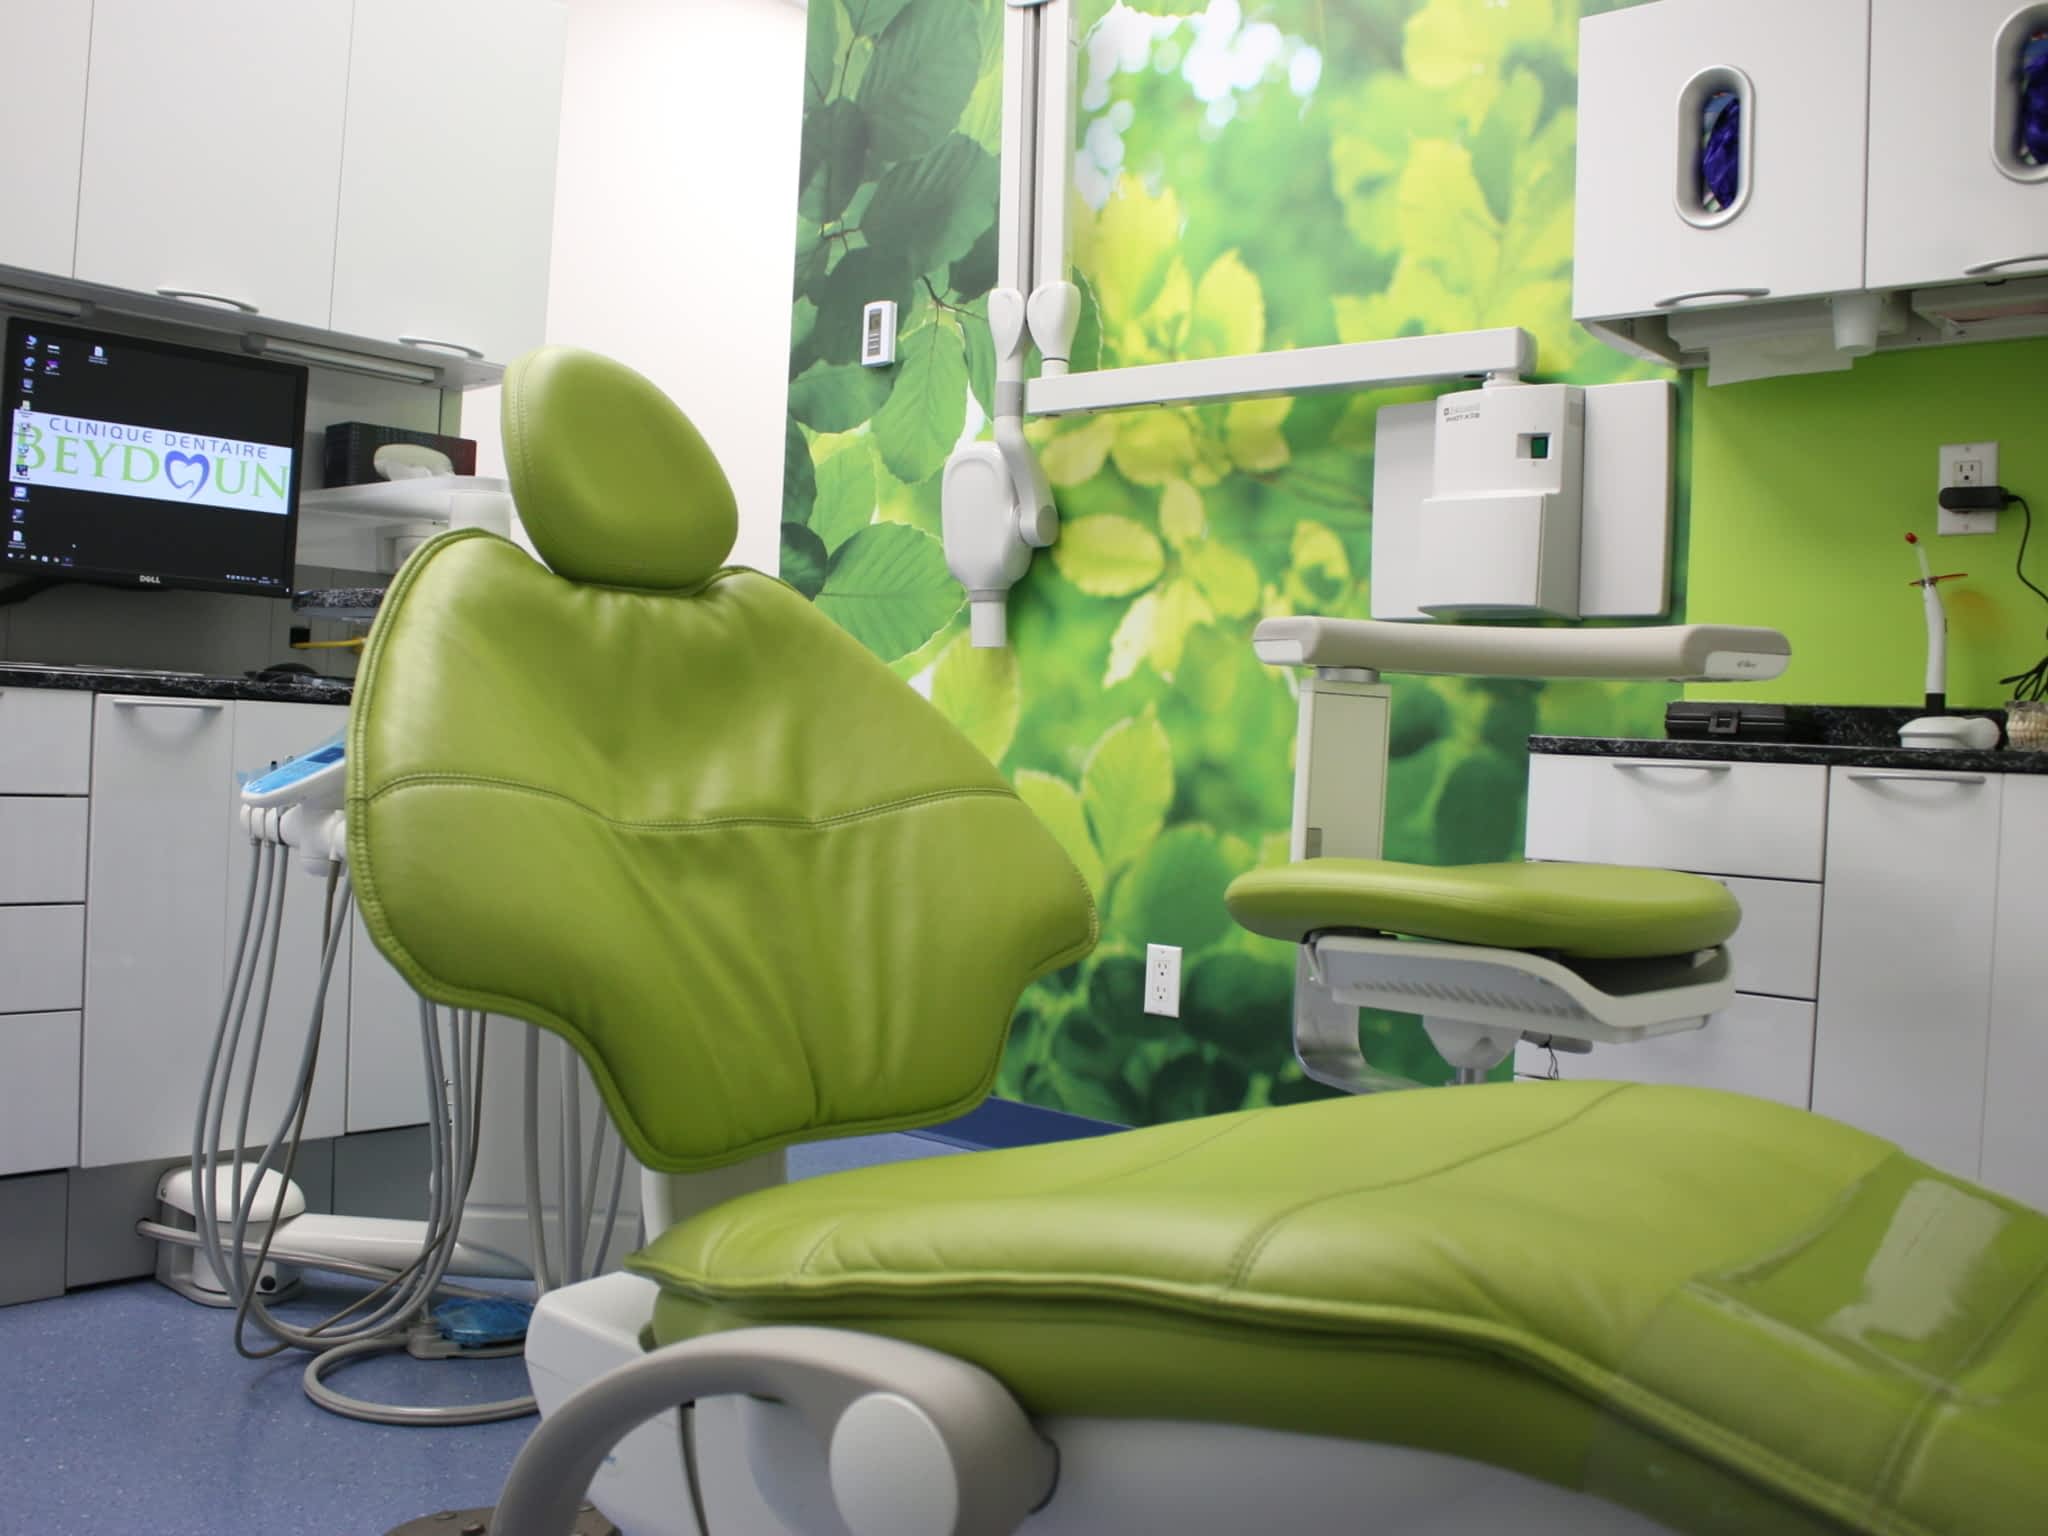 photo Clinique Dentaire Beydoun